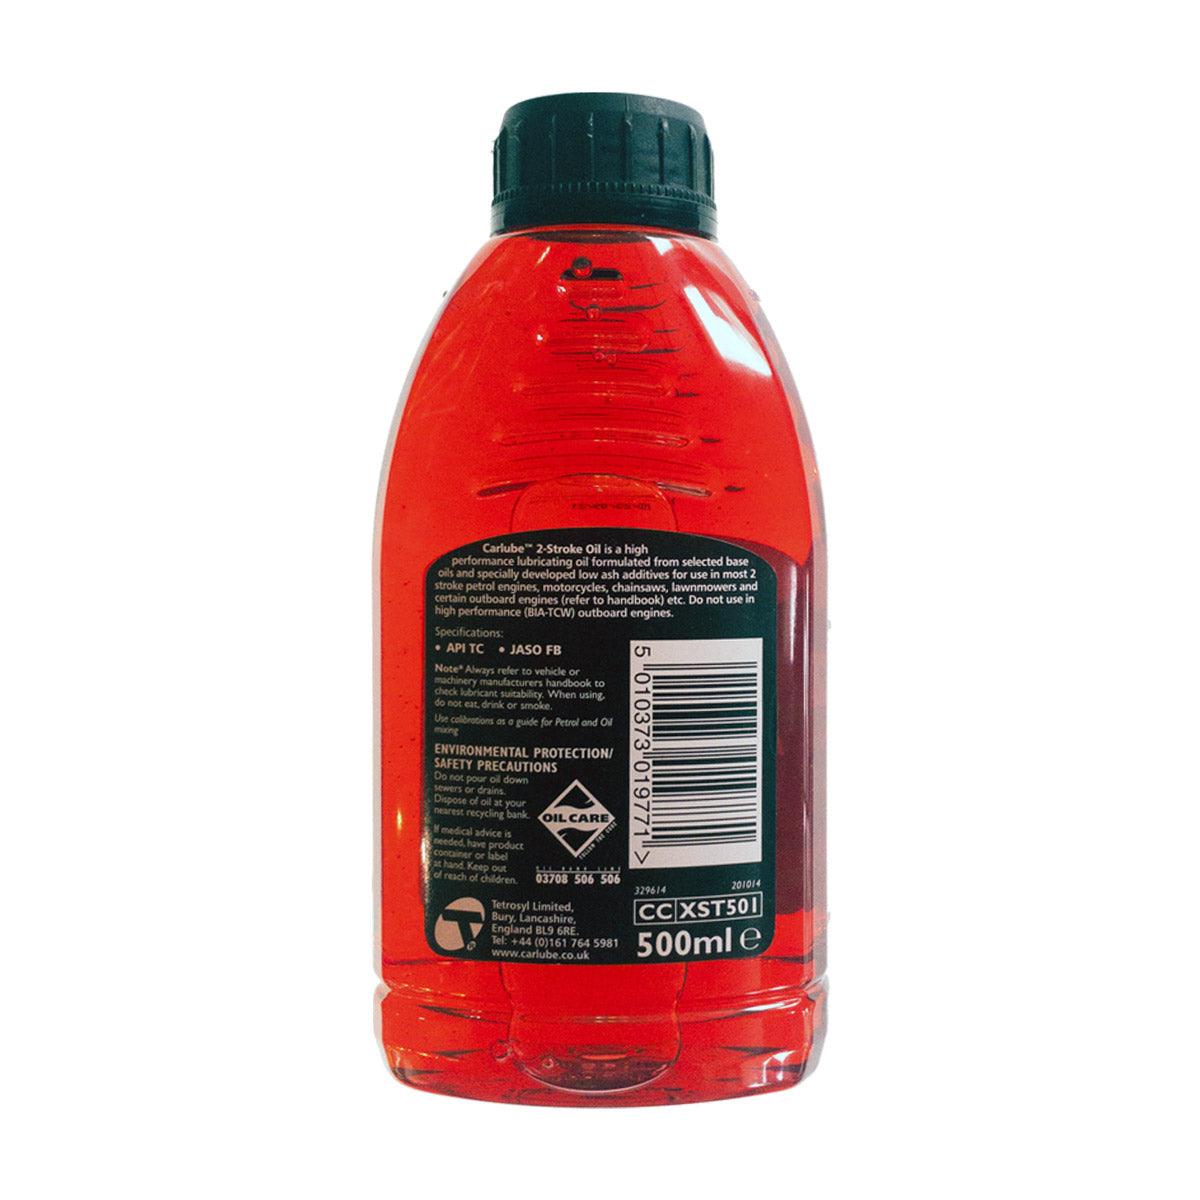 2-Stroke Oil for Premix or Injector - 500ml Bottle - The Motocrosshut